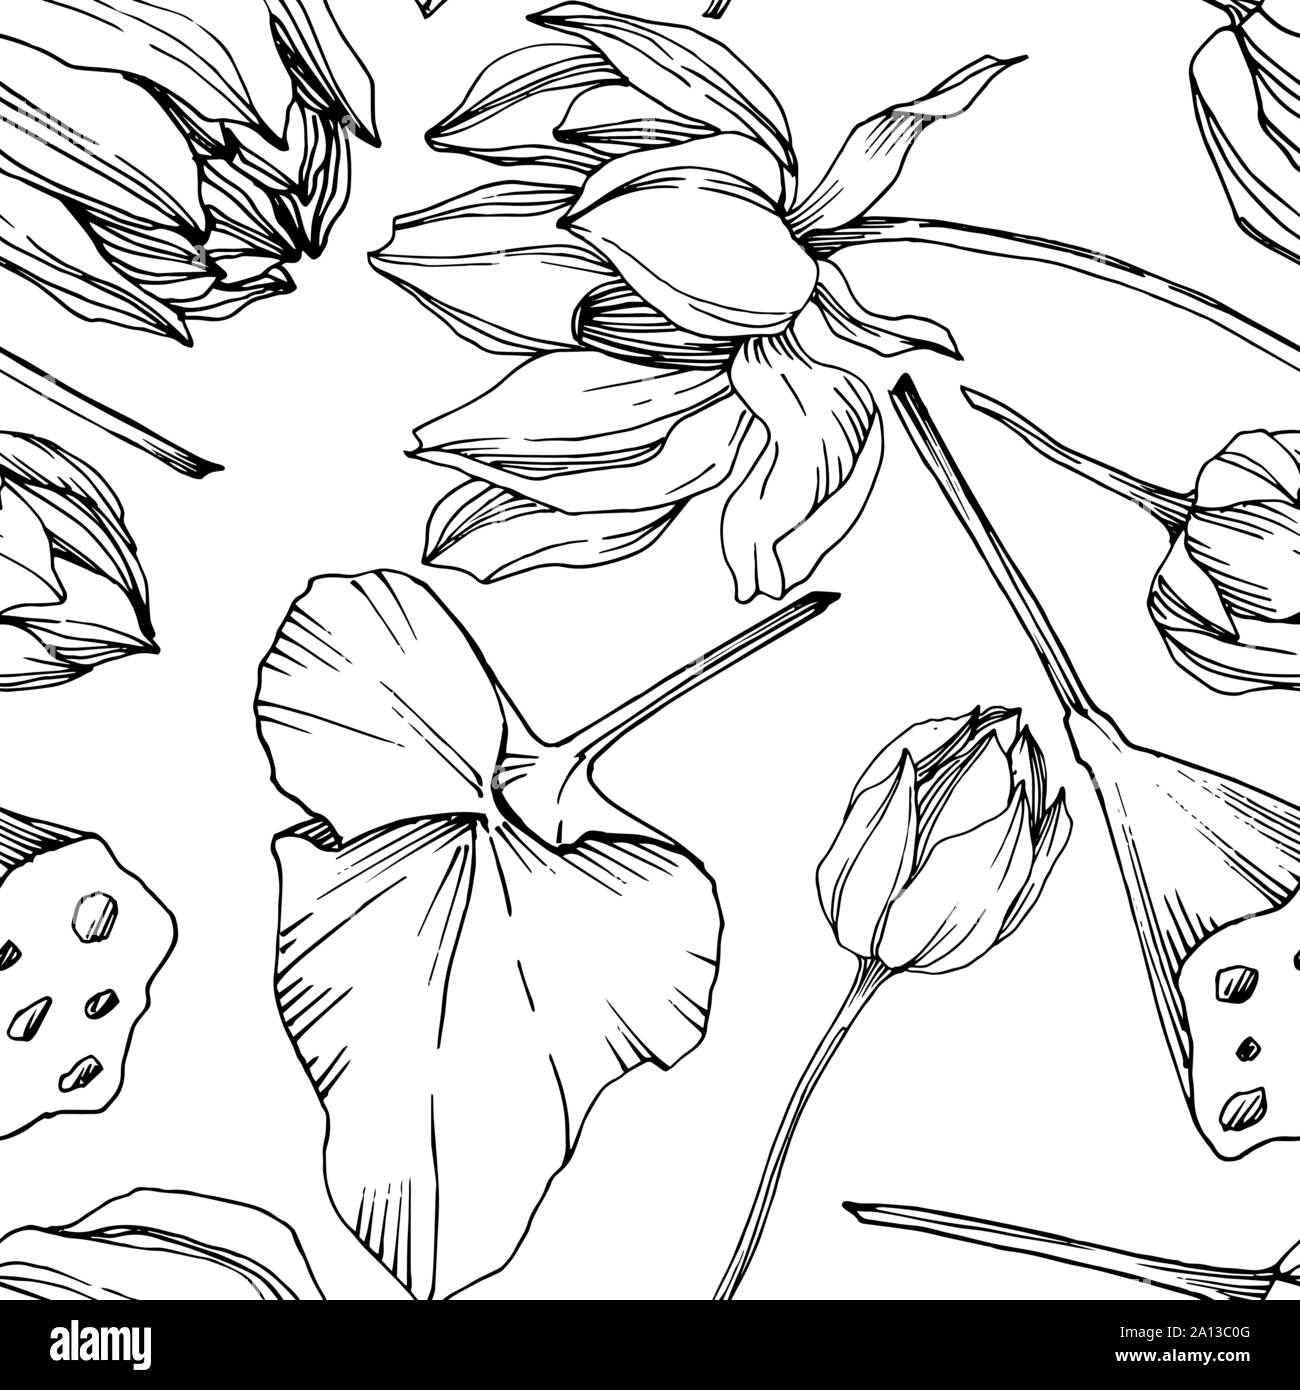 Vektor Lotus Blumen botanischen Blume. Schwarz und weiß eingraviert Tinte Art nahtlose Muster. Stock Vektor